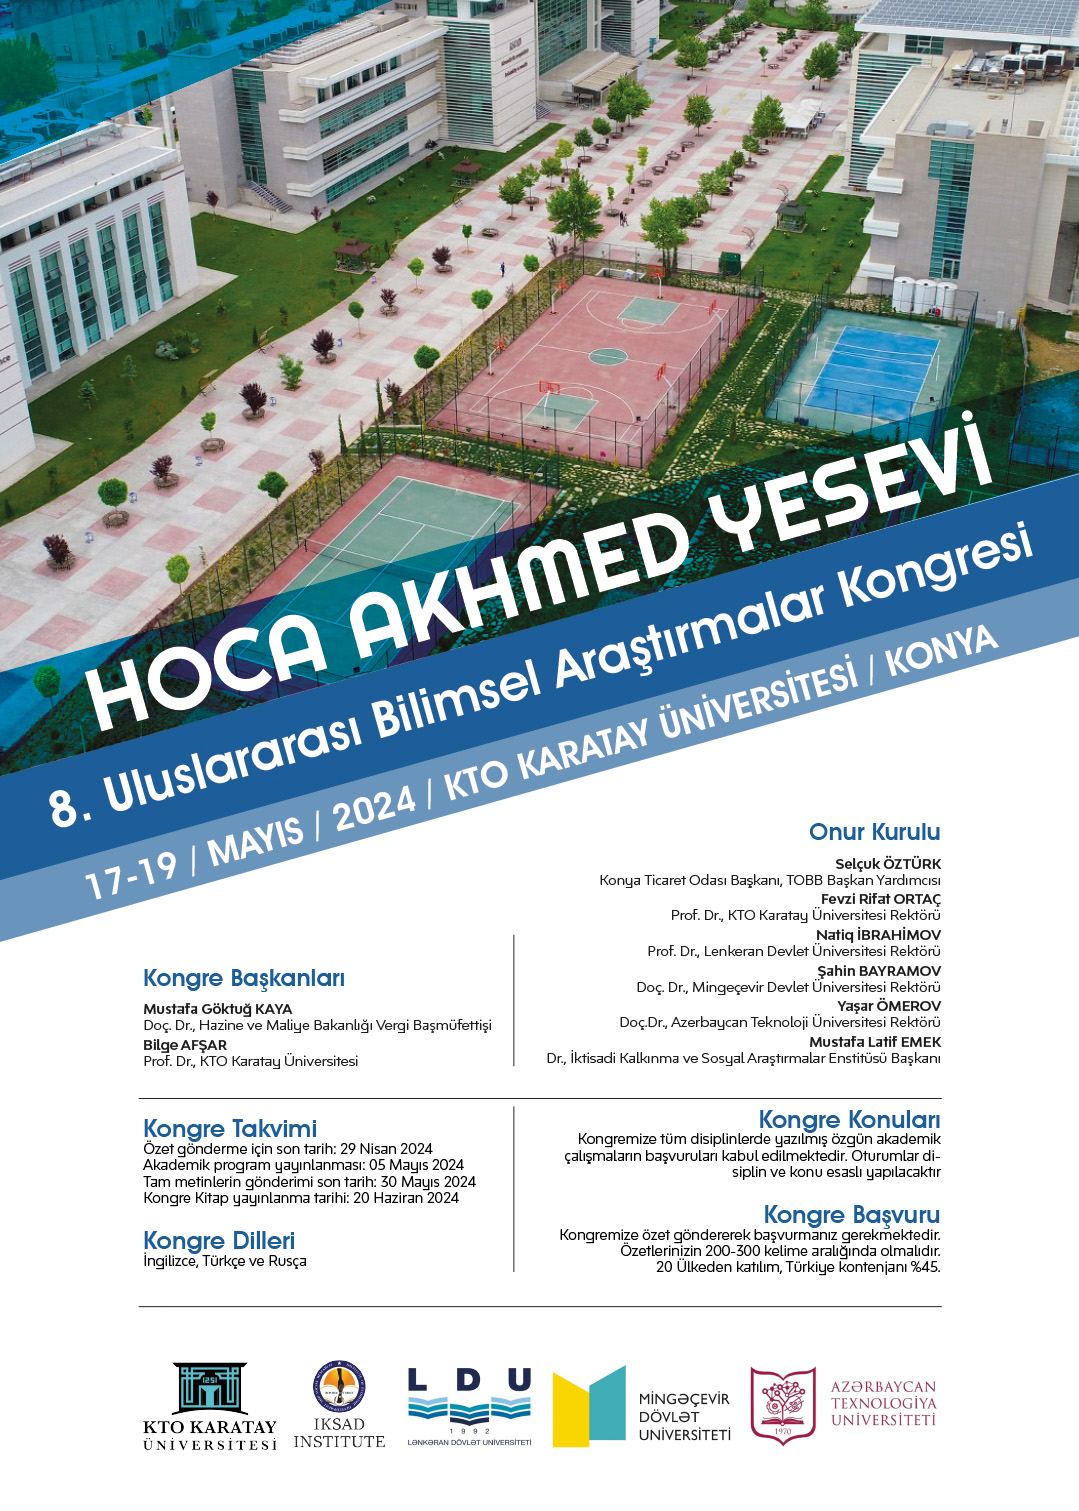 Hoca Akhmed Yesevi 8. Uluslararası Bilimsel Araştırmalar Kongresi